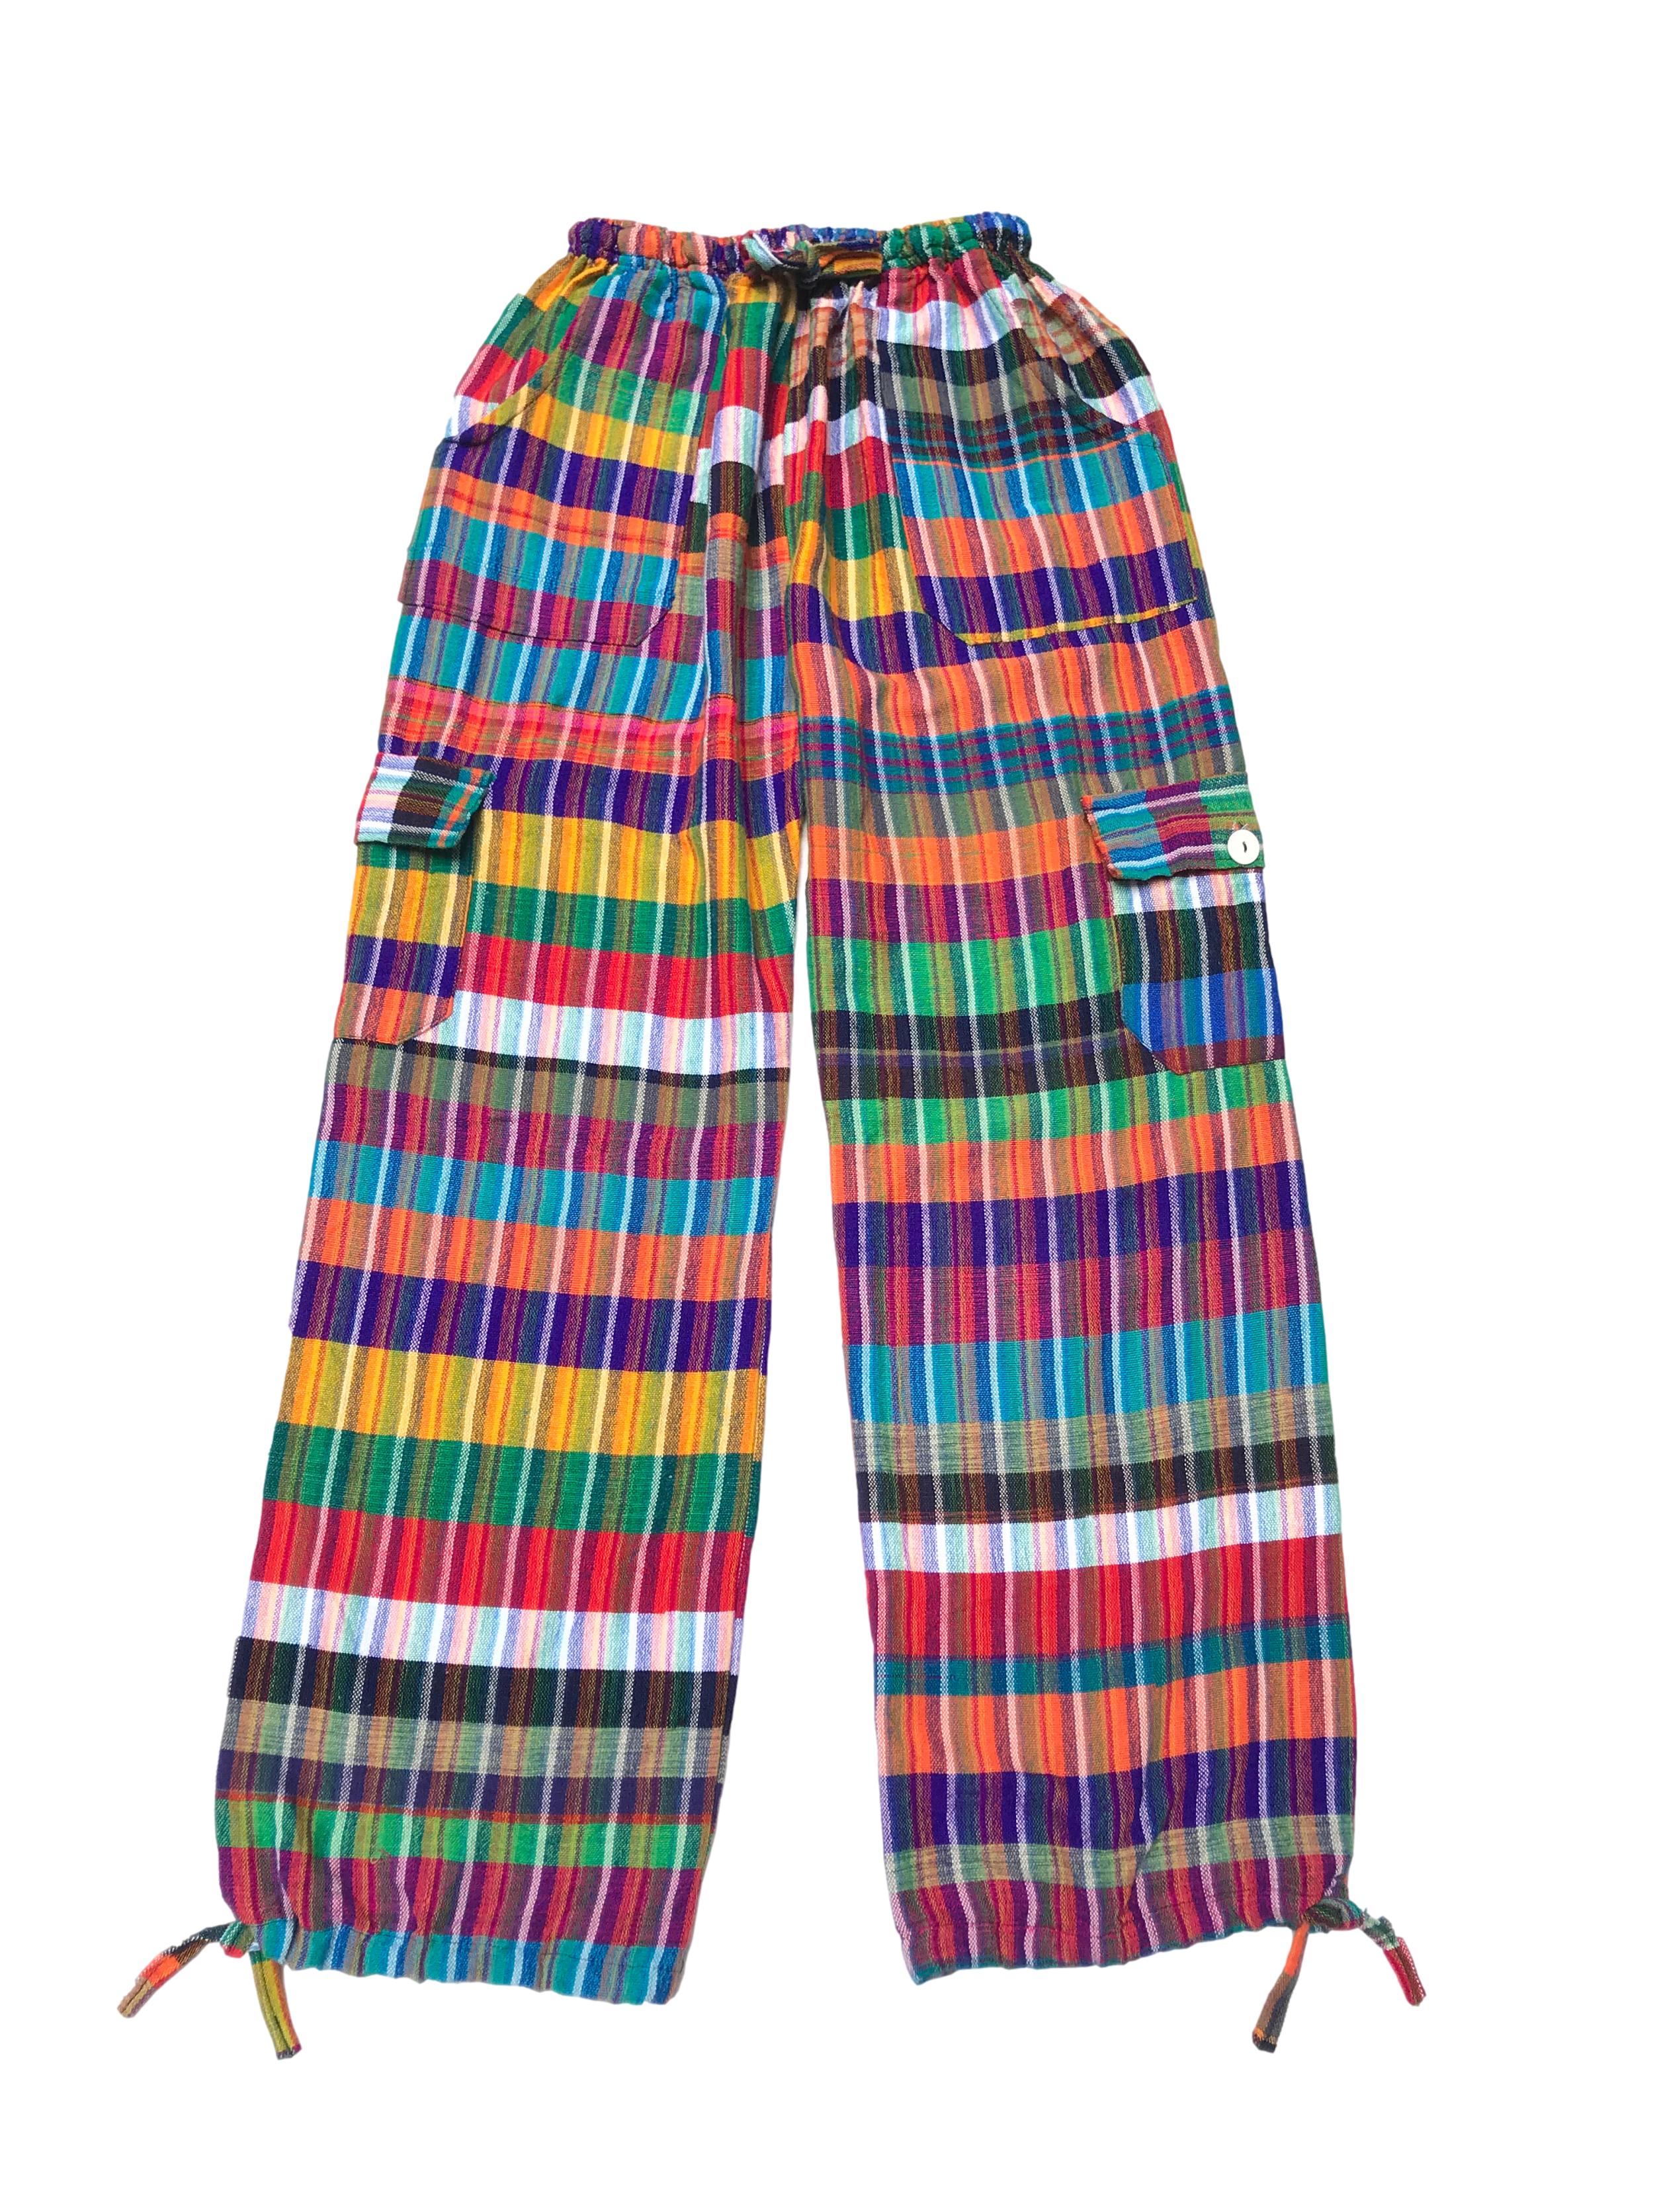 Pantalón rasta multicolor con bolsillos cargo y laterales, cintura elástica